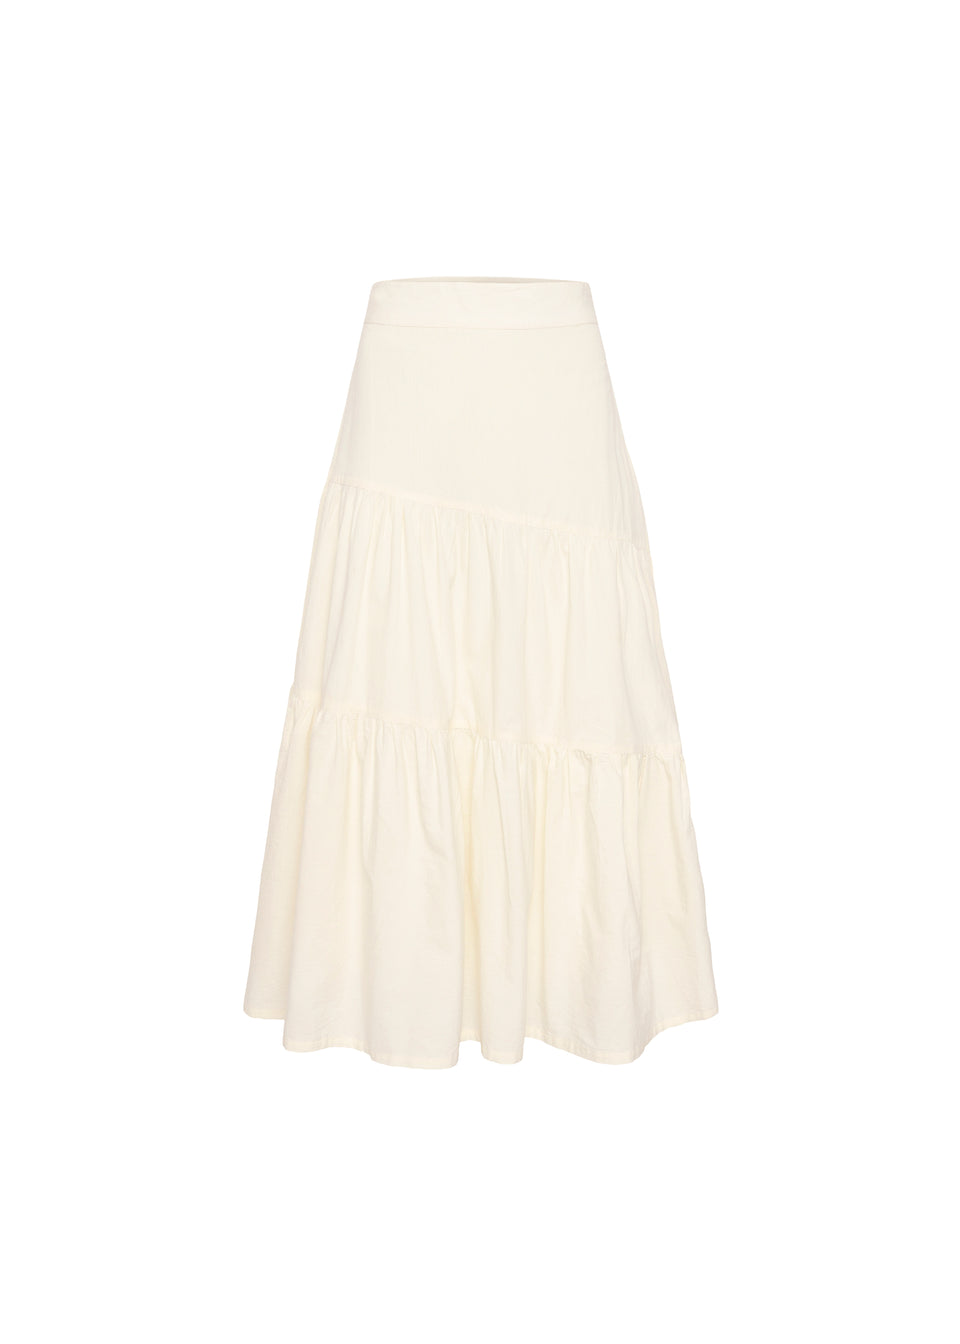 FRNCH  AUDREY skirt / women